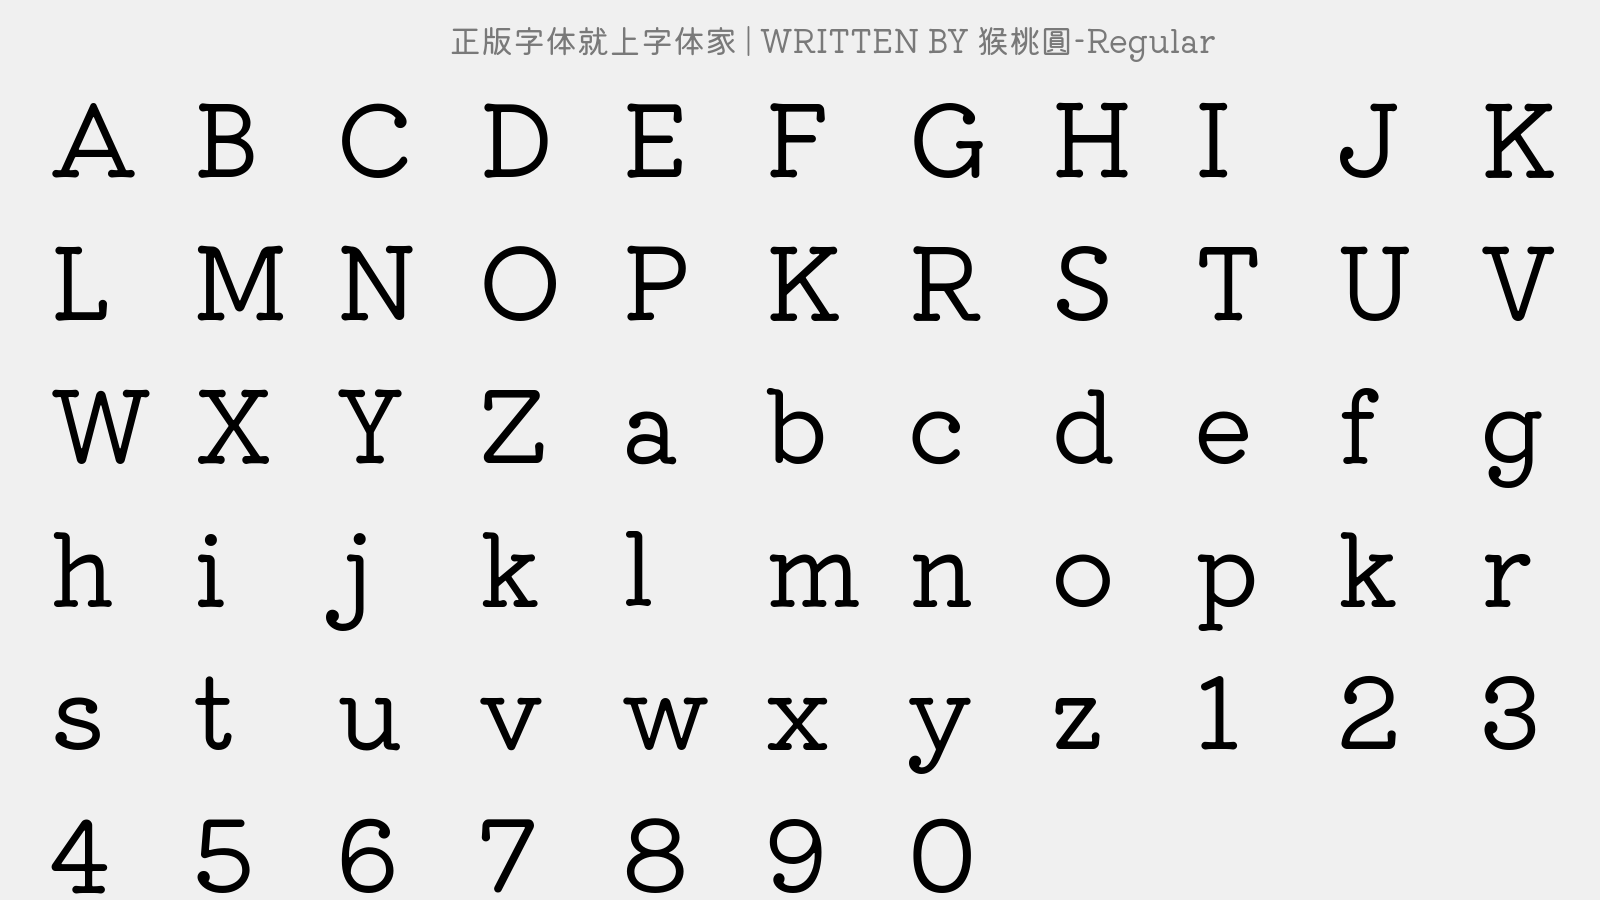 猕猴桃圆-Regular - 大写字母/小写字母/数字